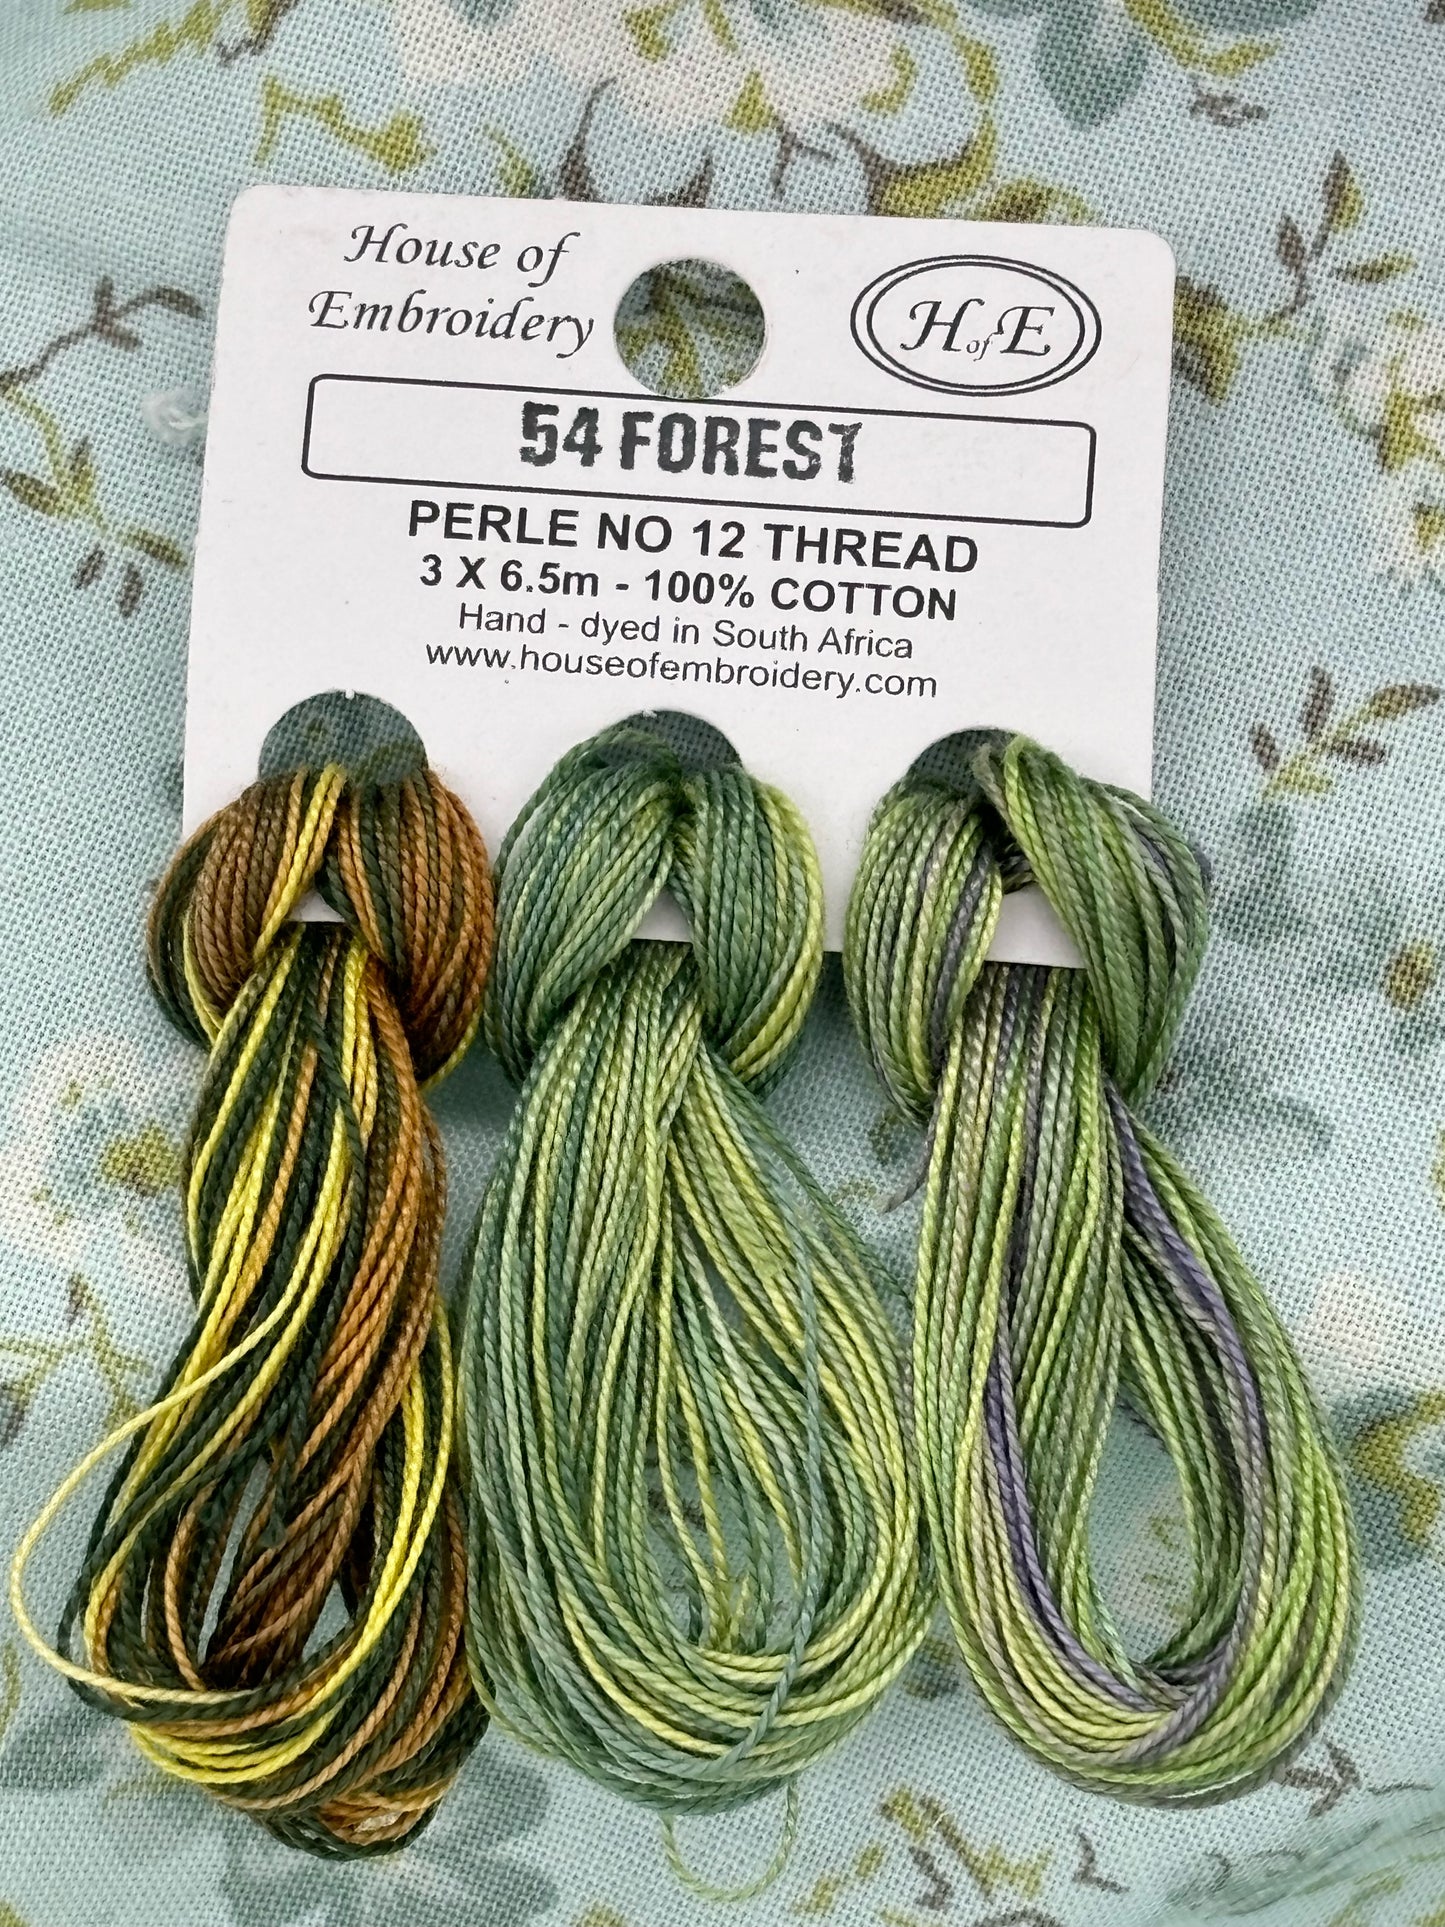 PC12 HofE - #54 Forest - The Needle & Thread Emporium